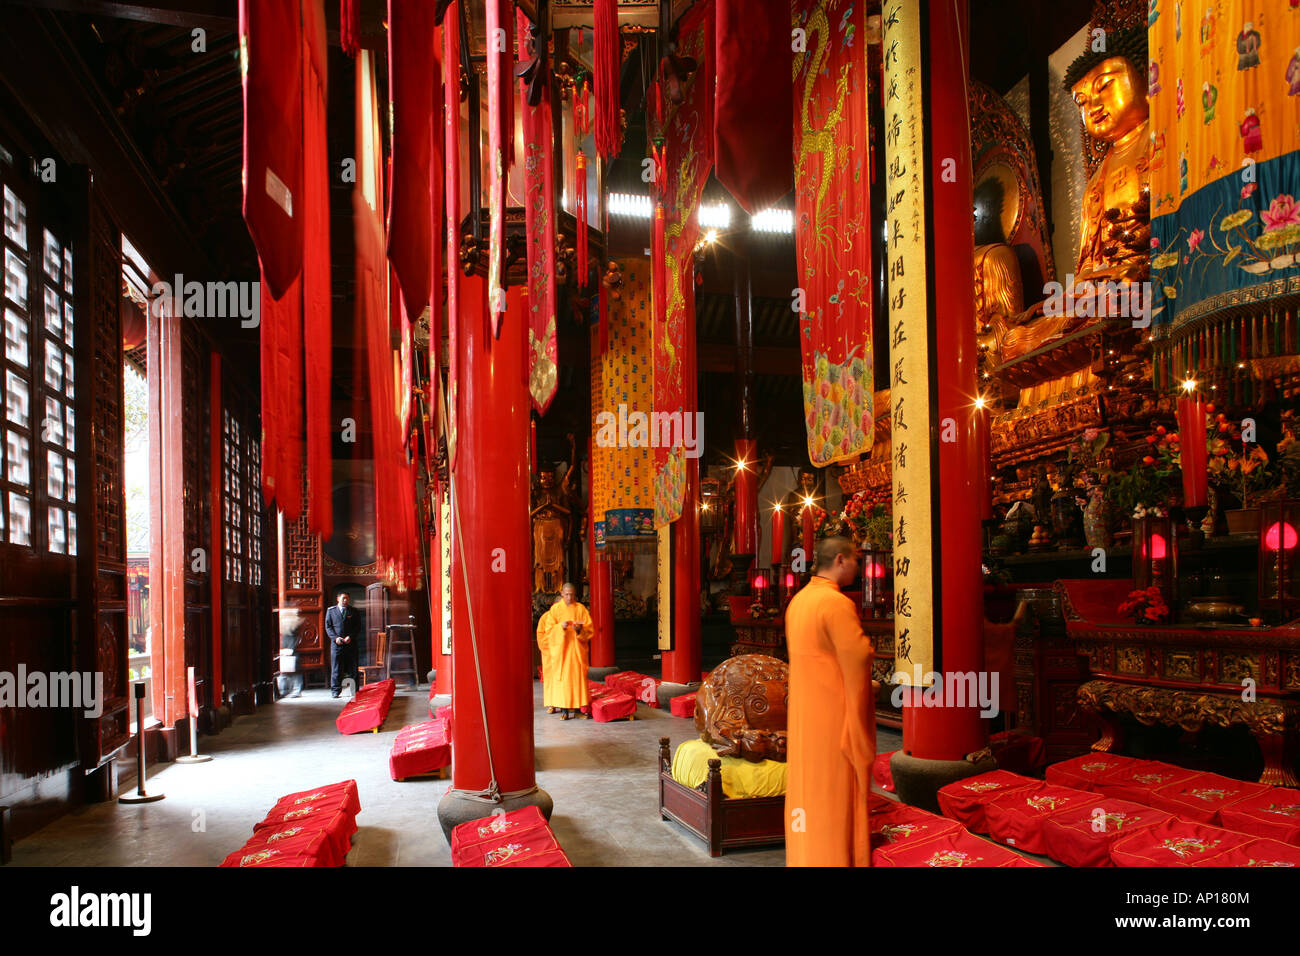 Il Tempio del Buddha di Giada, Andacht in der Haupthalle, Tempelanlage aus der Dynastie canzone, Mittelpunkt eine Buddha-Statue aus giada, seve Foto Stock